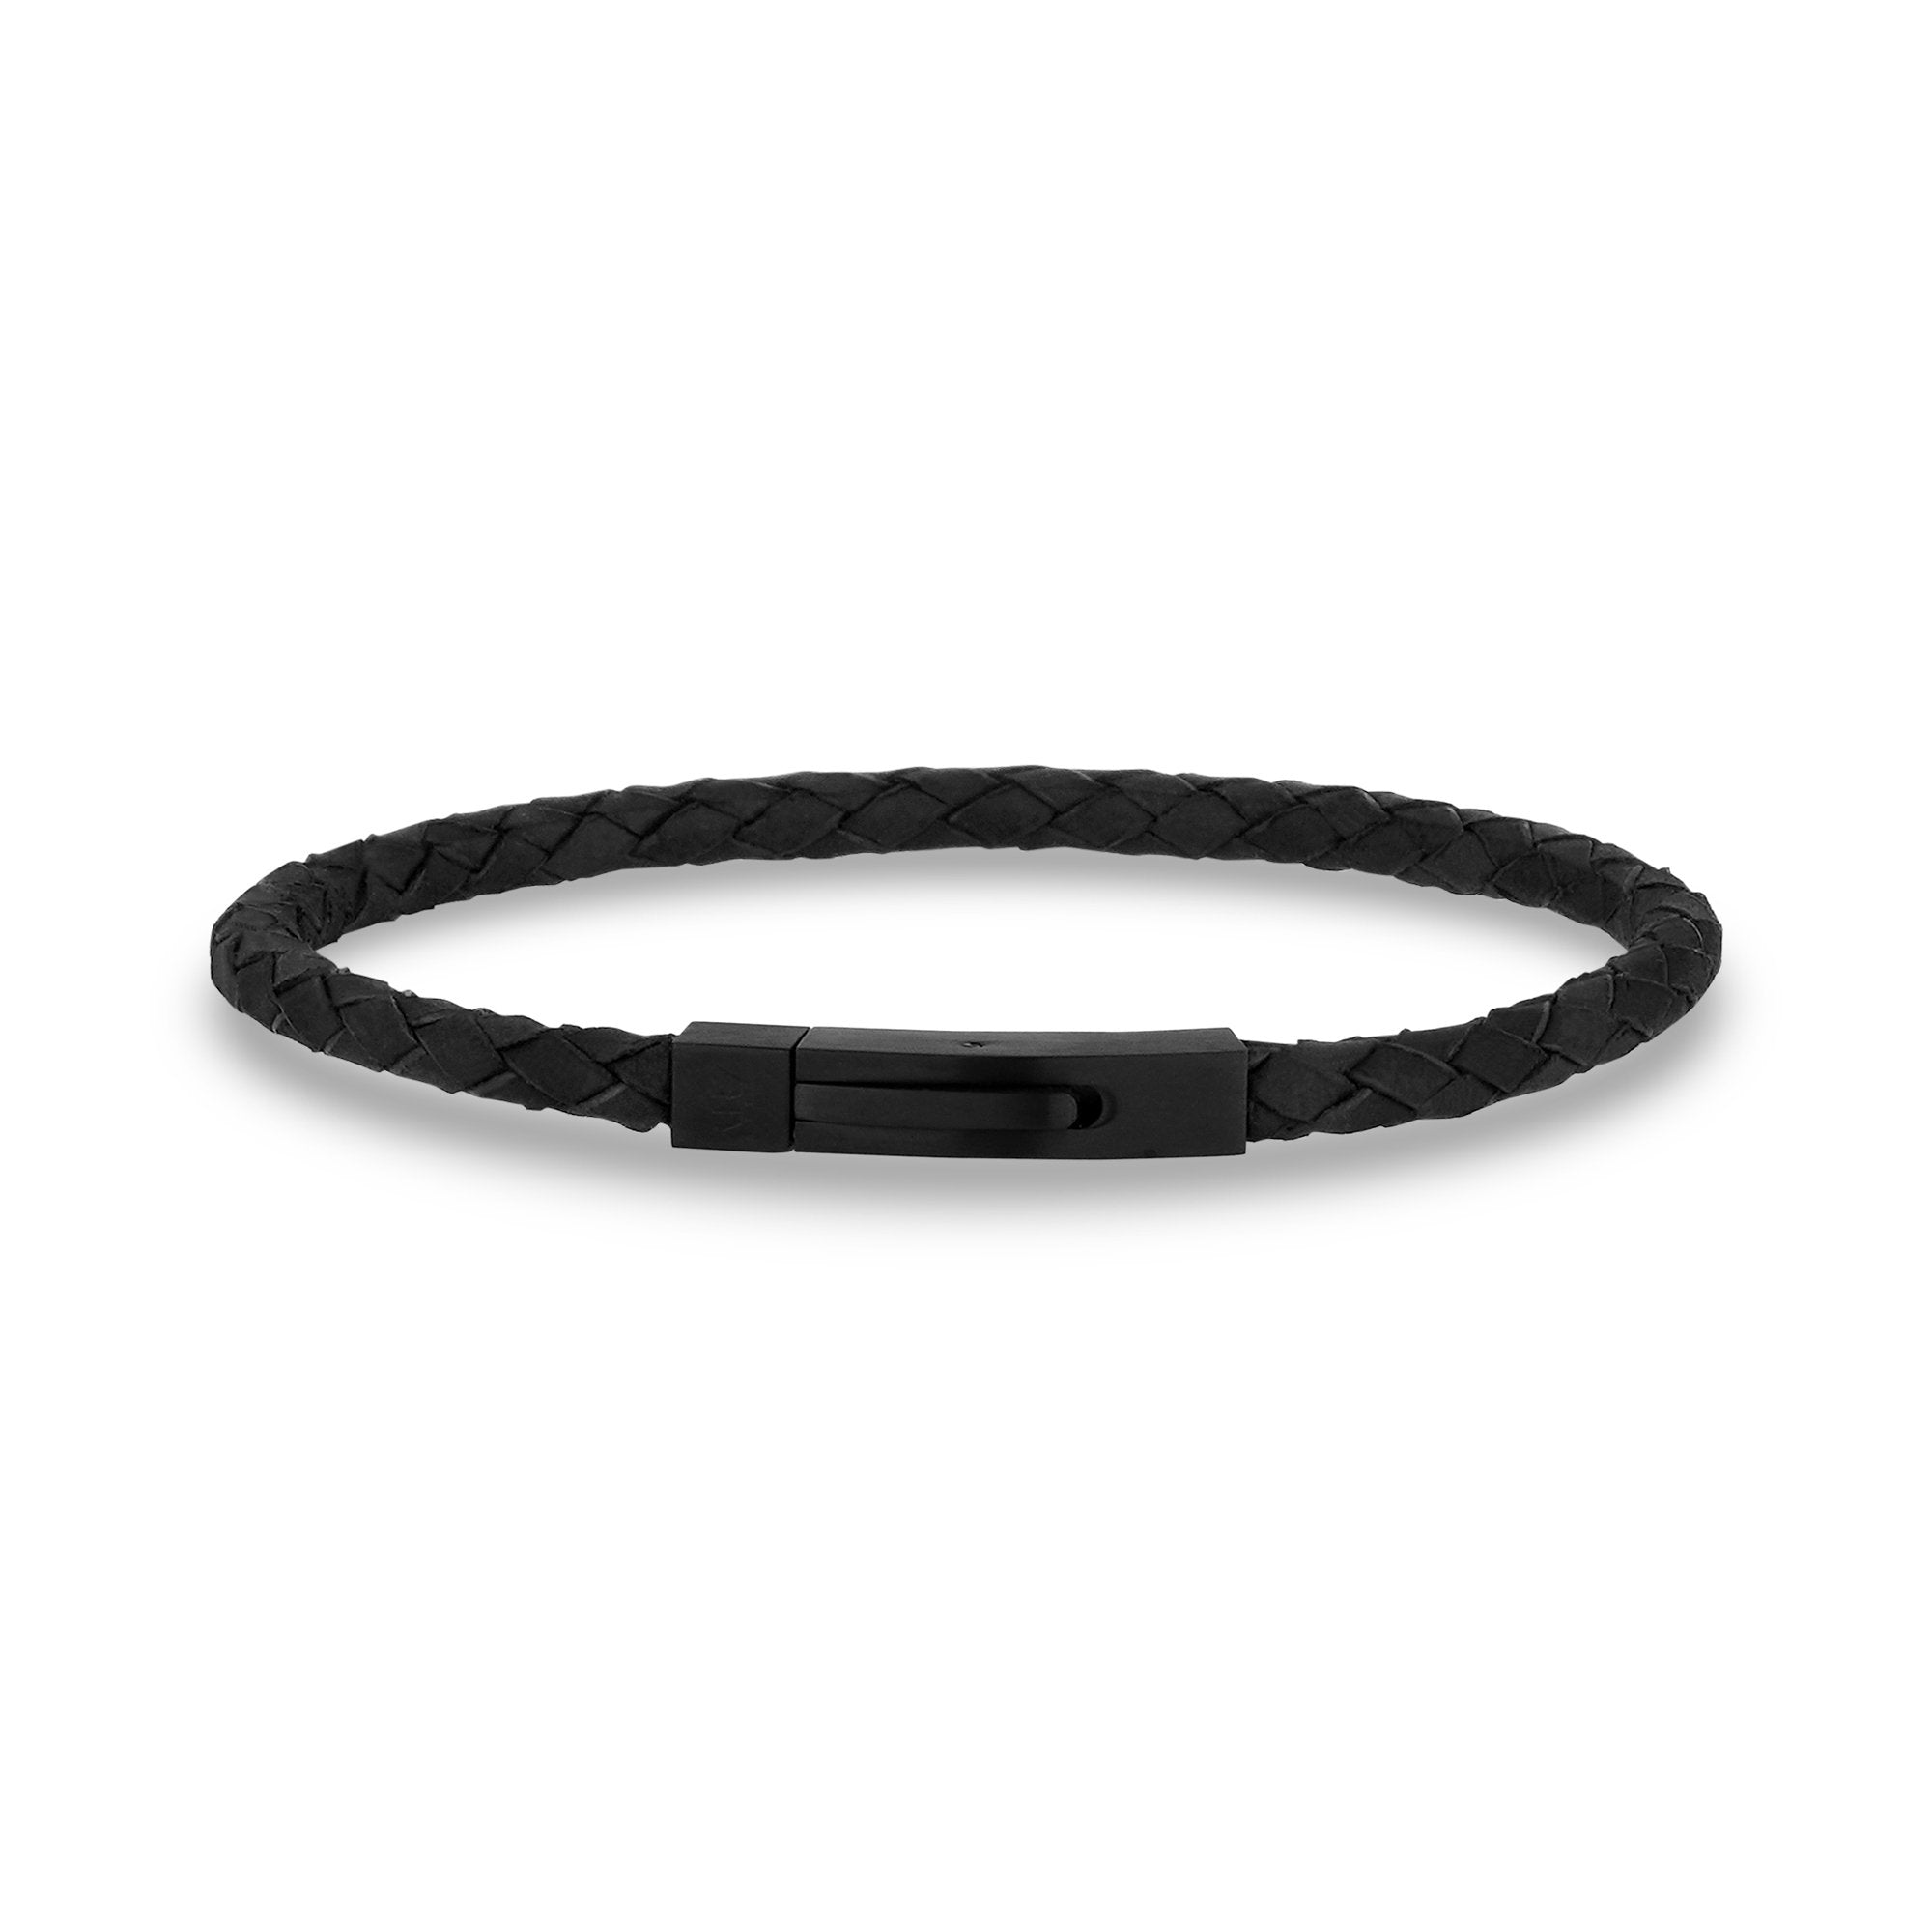 Mens black leather bracelet, mens leather bracelets UK